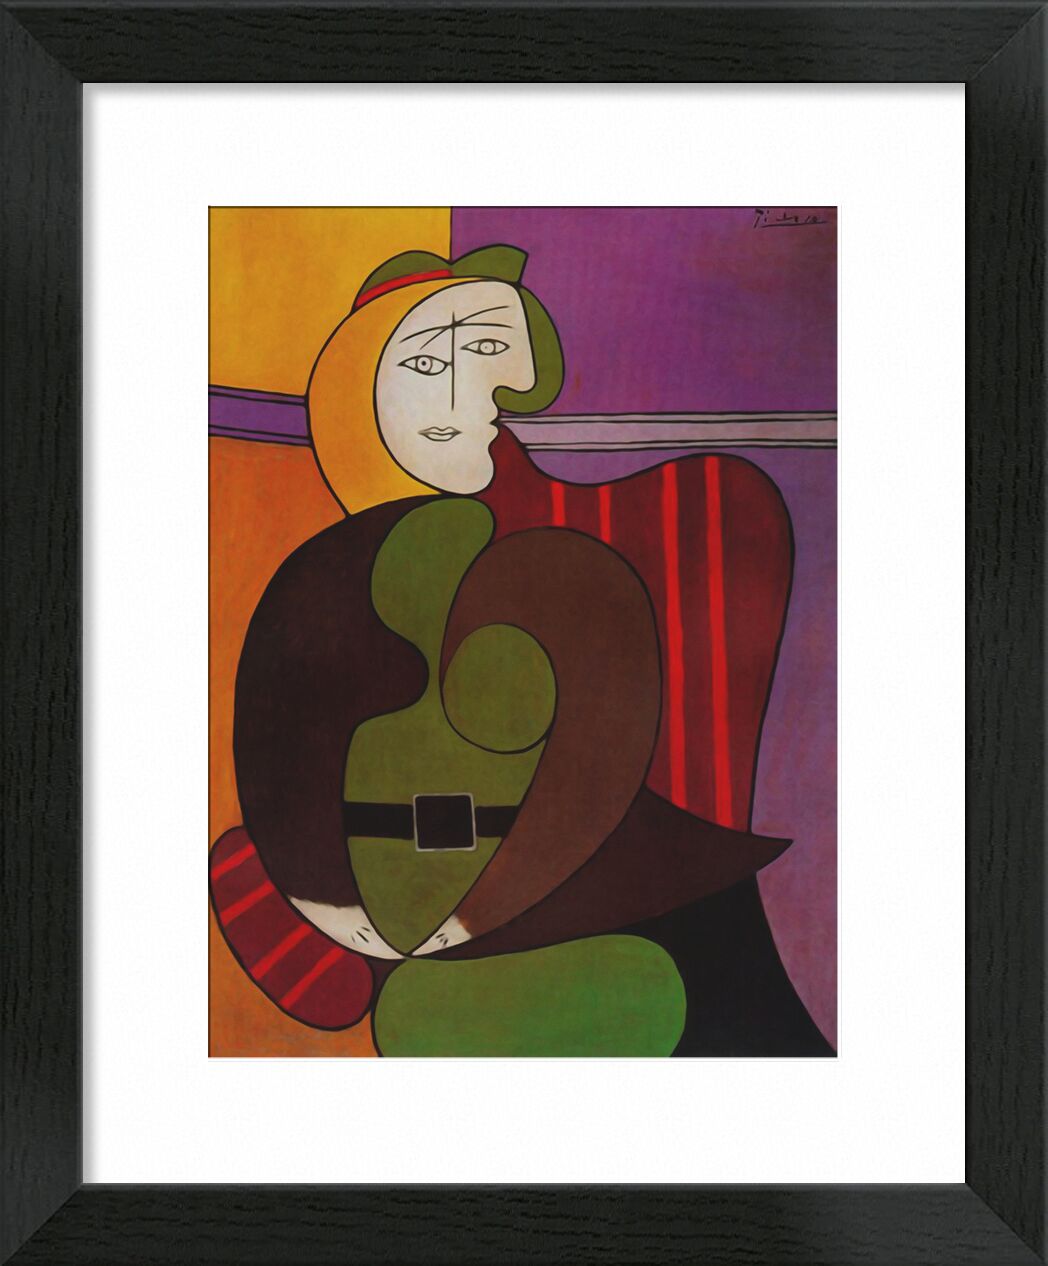 Seated Woman in a Red Armchair desde Bellas artes, Prodi Art, retrato, cubismo, abstracto, Sillón, pintura, picasso